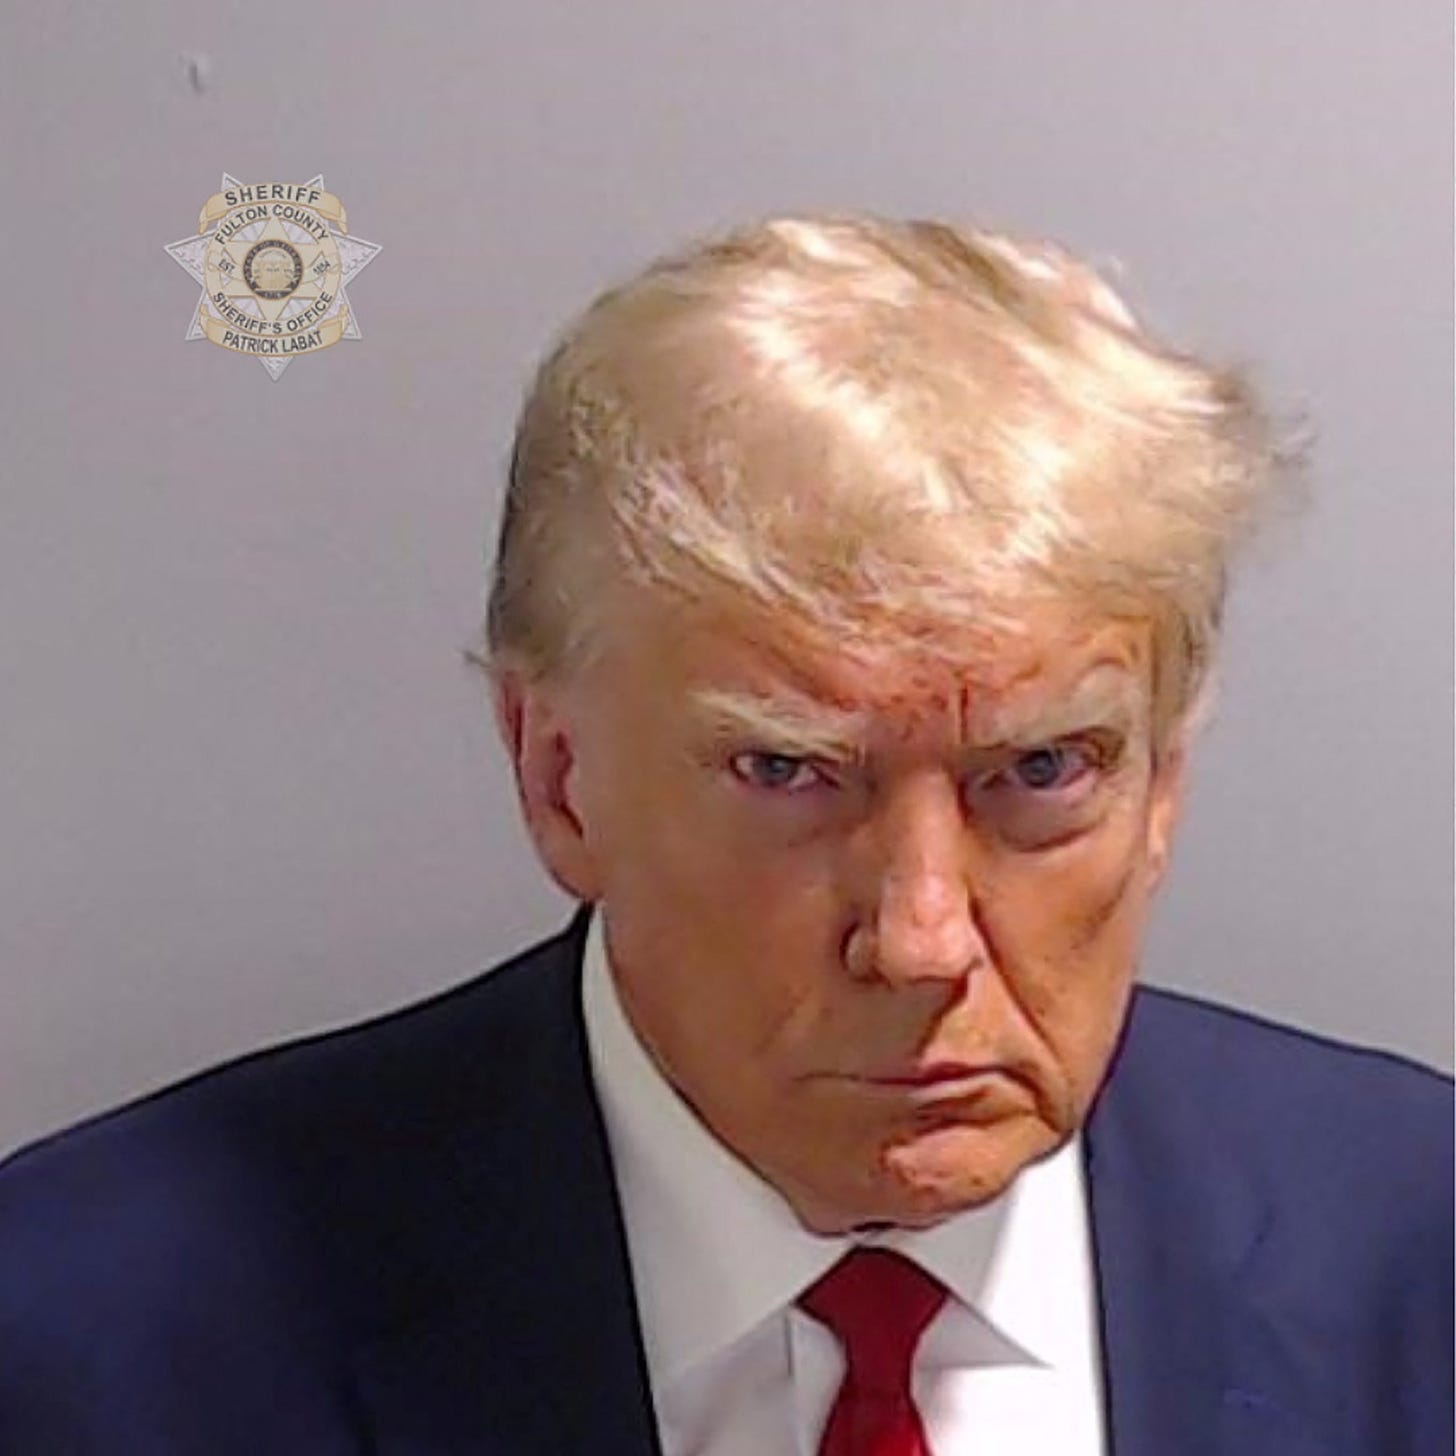 A mug shot of the former U.S. President Donald Trump.